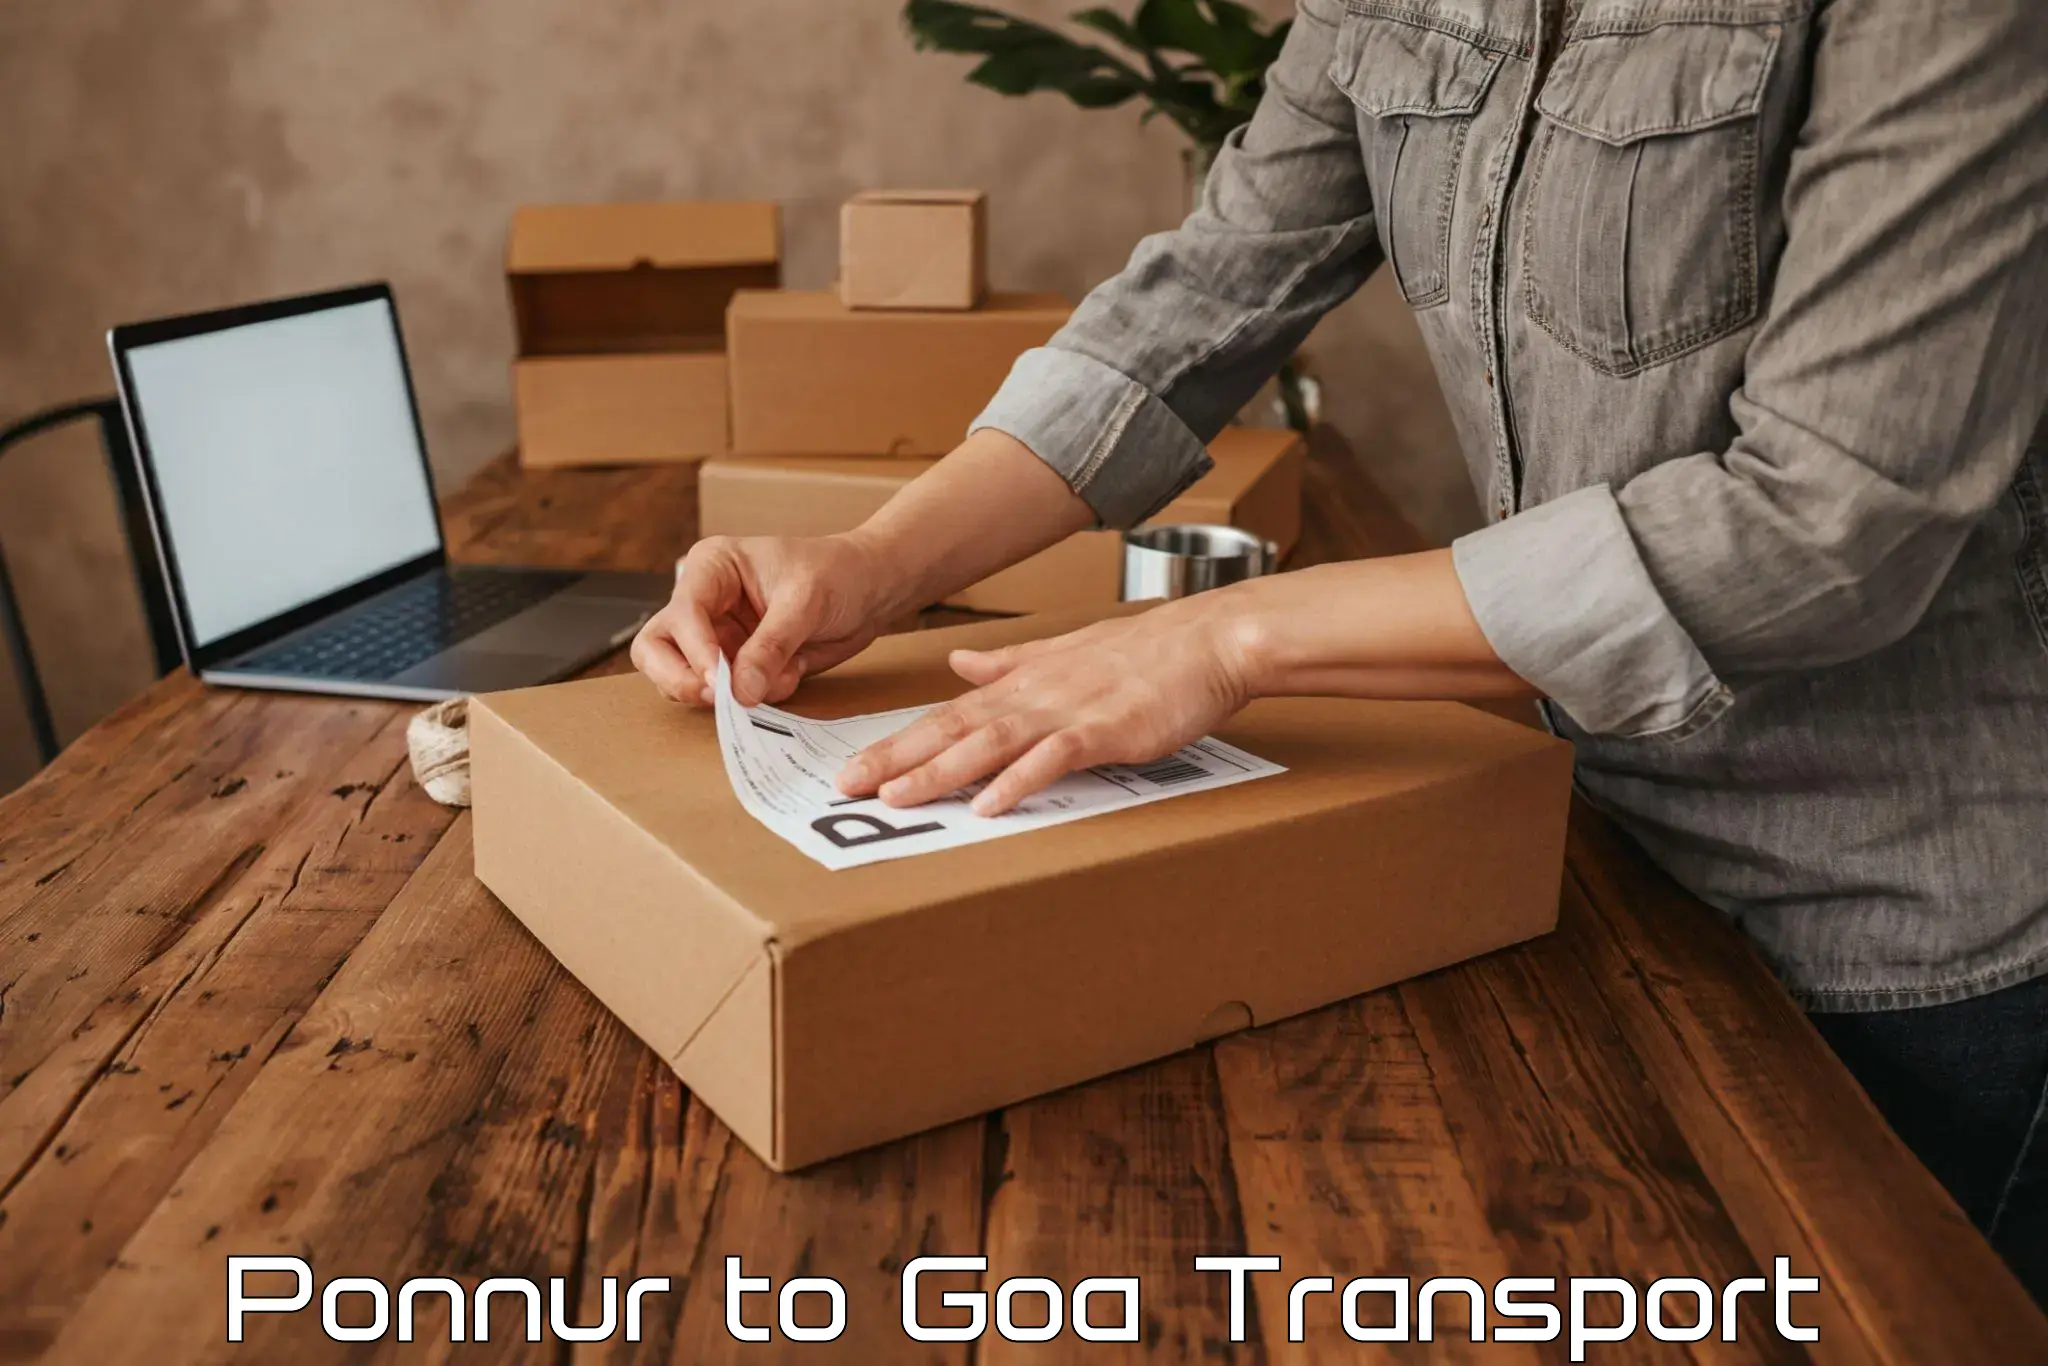 Furniture transport service in Ponnur to IIT Goa